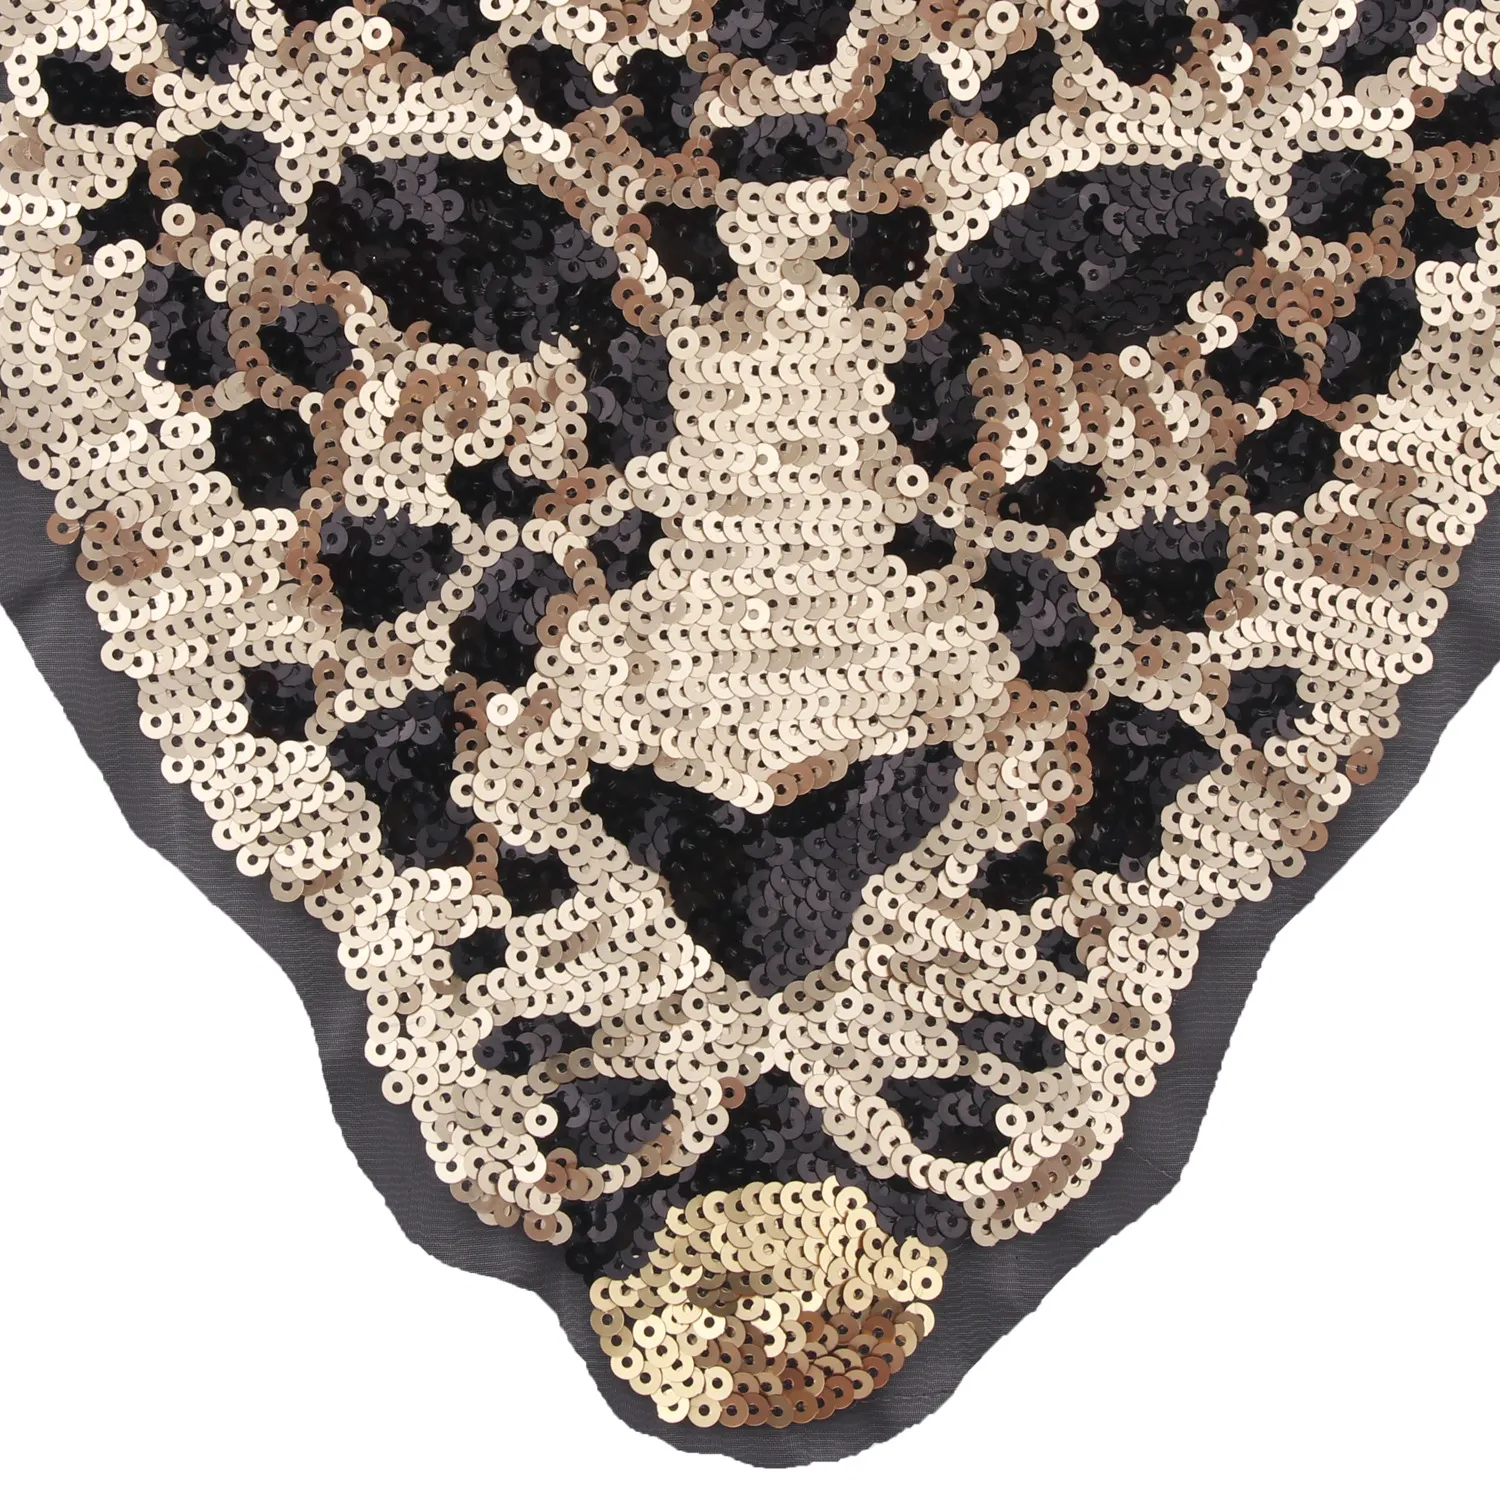 Neue Cartoon große Tier Pailletten Leopard Tiger Stickerei Tuch Patch Nähen auf Kleidung Zubehör Dekoration9815550